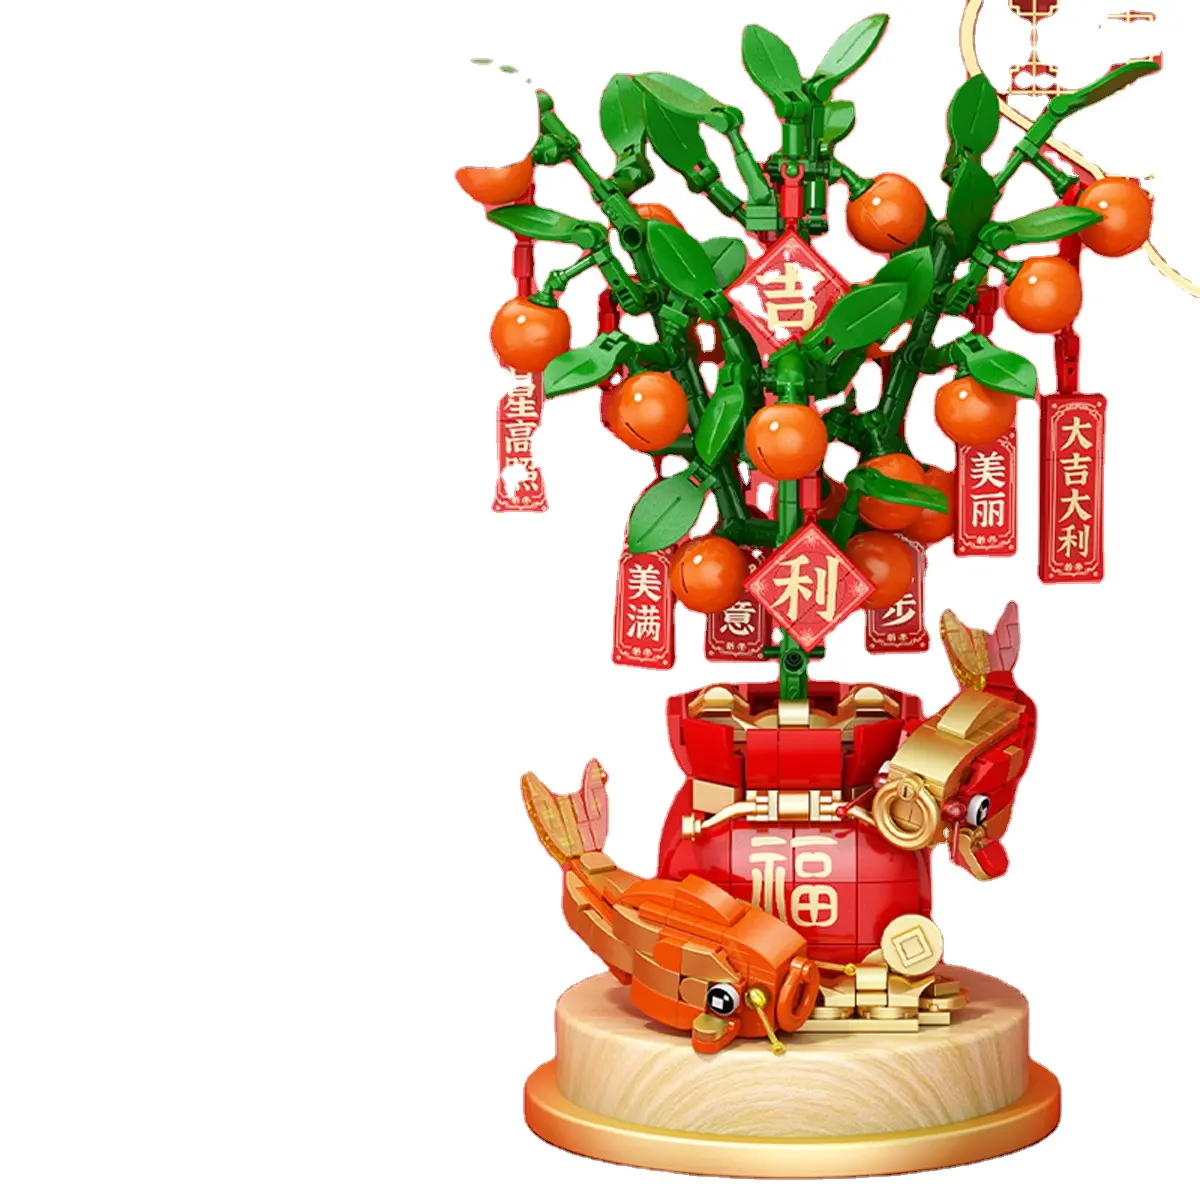 Año Nuevo chino educativo ensamblado Festival de Primavera regalos intelecto bloques de construcción juguetes para niños